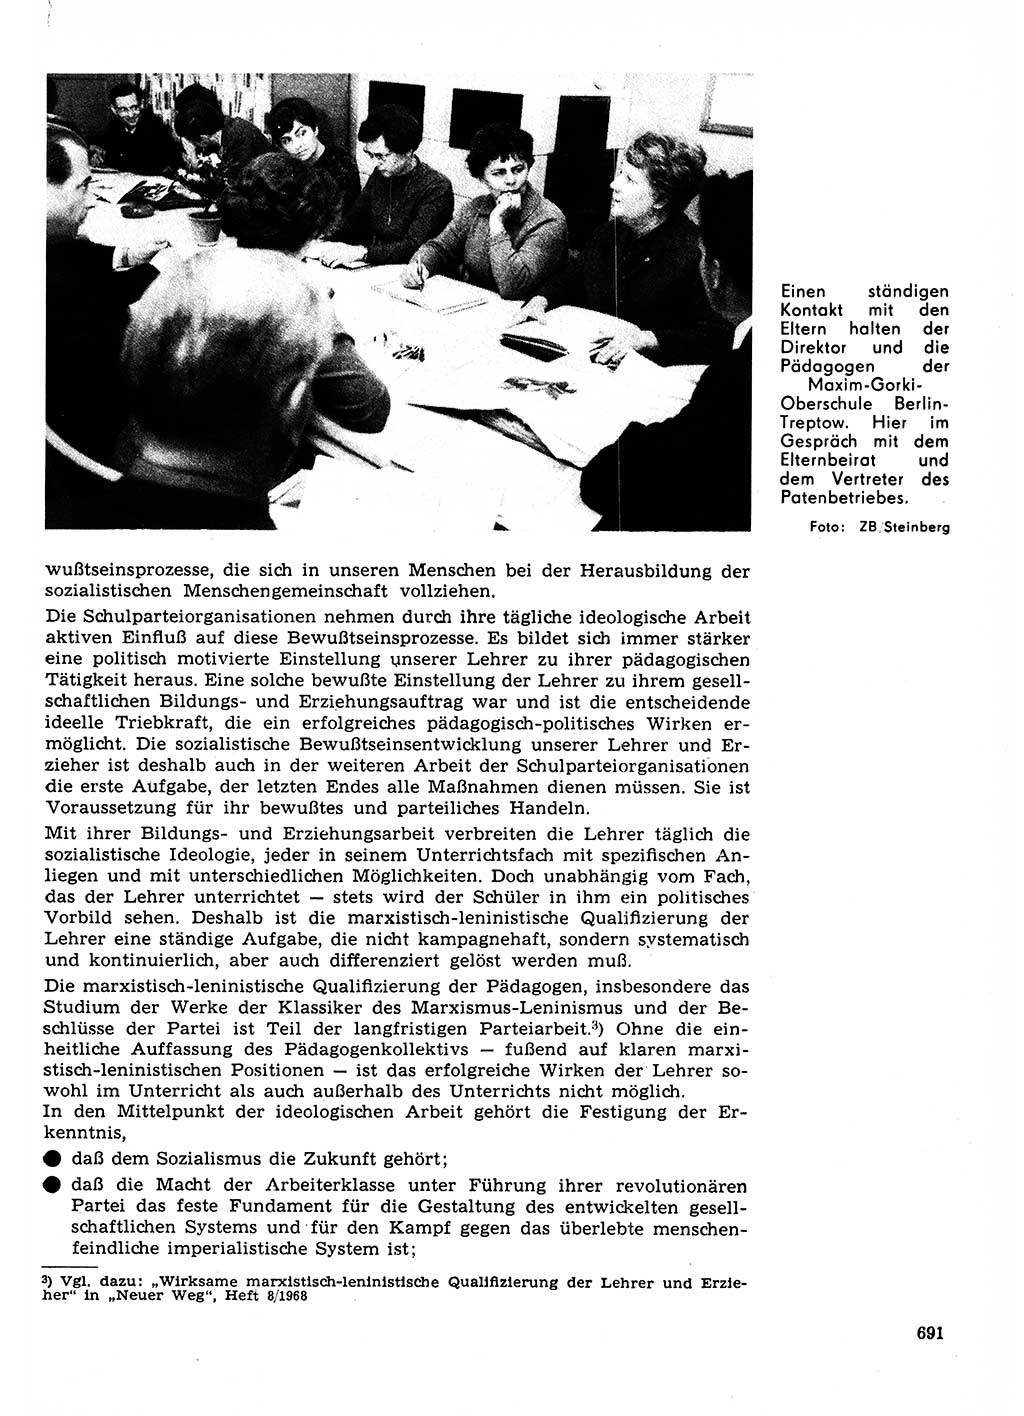 Neuer Weg (NW), Organ des Zentralkomitees (ZK) der SED (Sozialistische Einheitspartei Deutschlands) für Fragen des Parteilebens, 23. Jahrgang [Deutsche Demokratische Republik (DDR)] 1968, Seite 691 (NW ZK SED DDR 1968, S. 691)